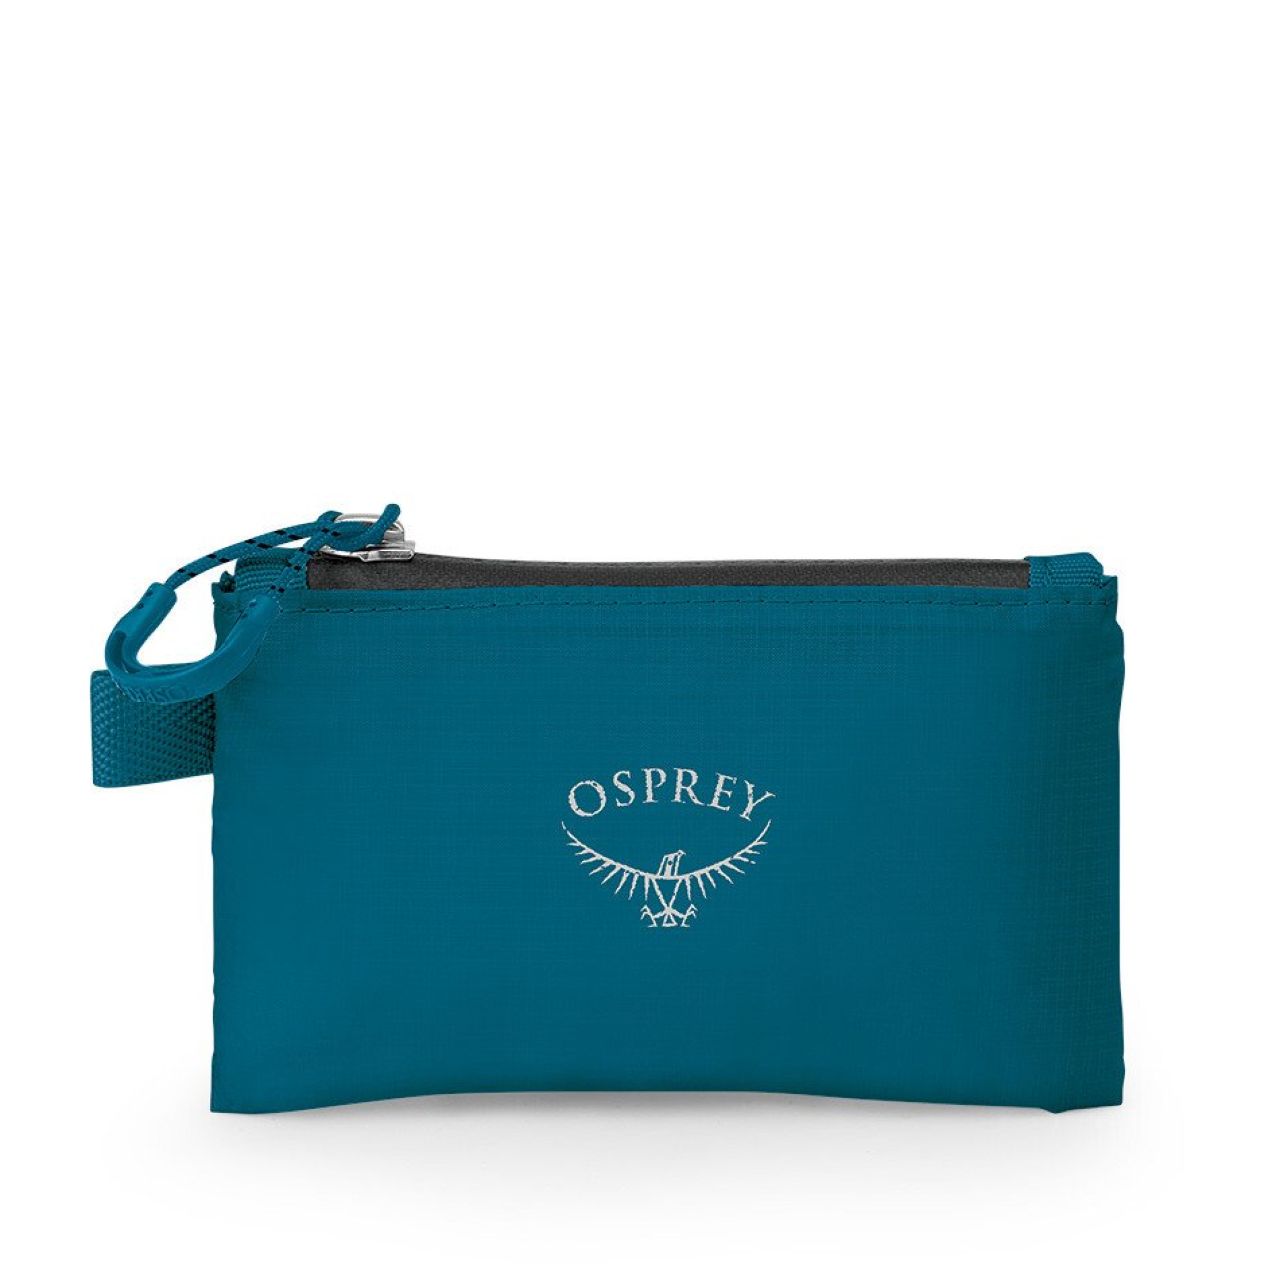 Osprey Ultralight Wallet | Wallets | Travel Wallets